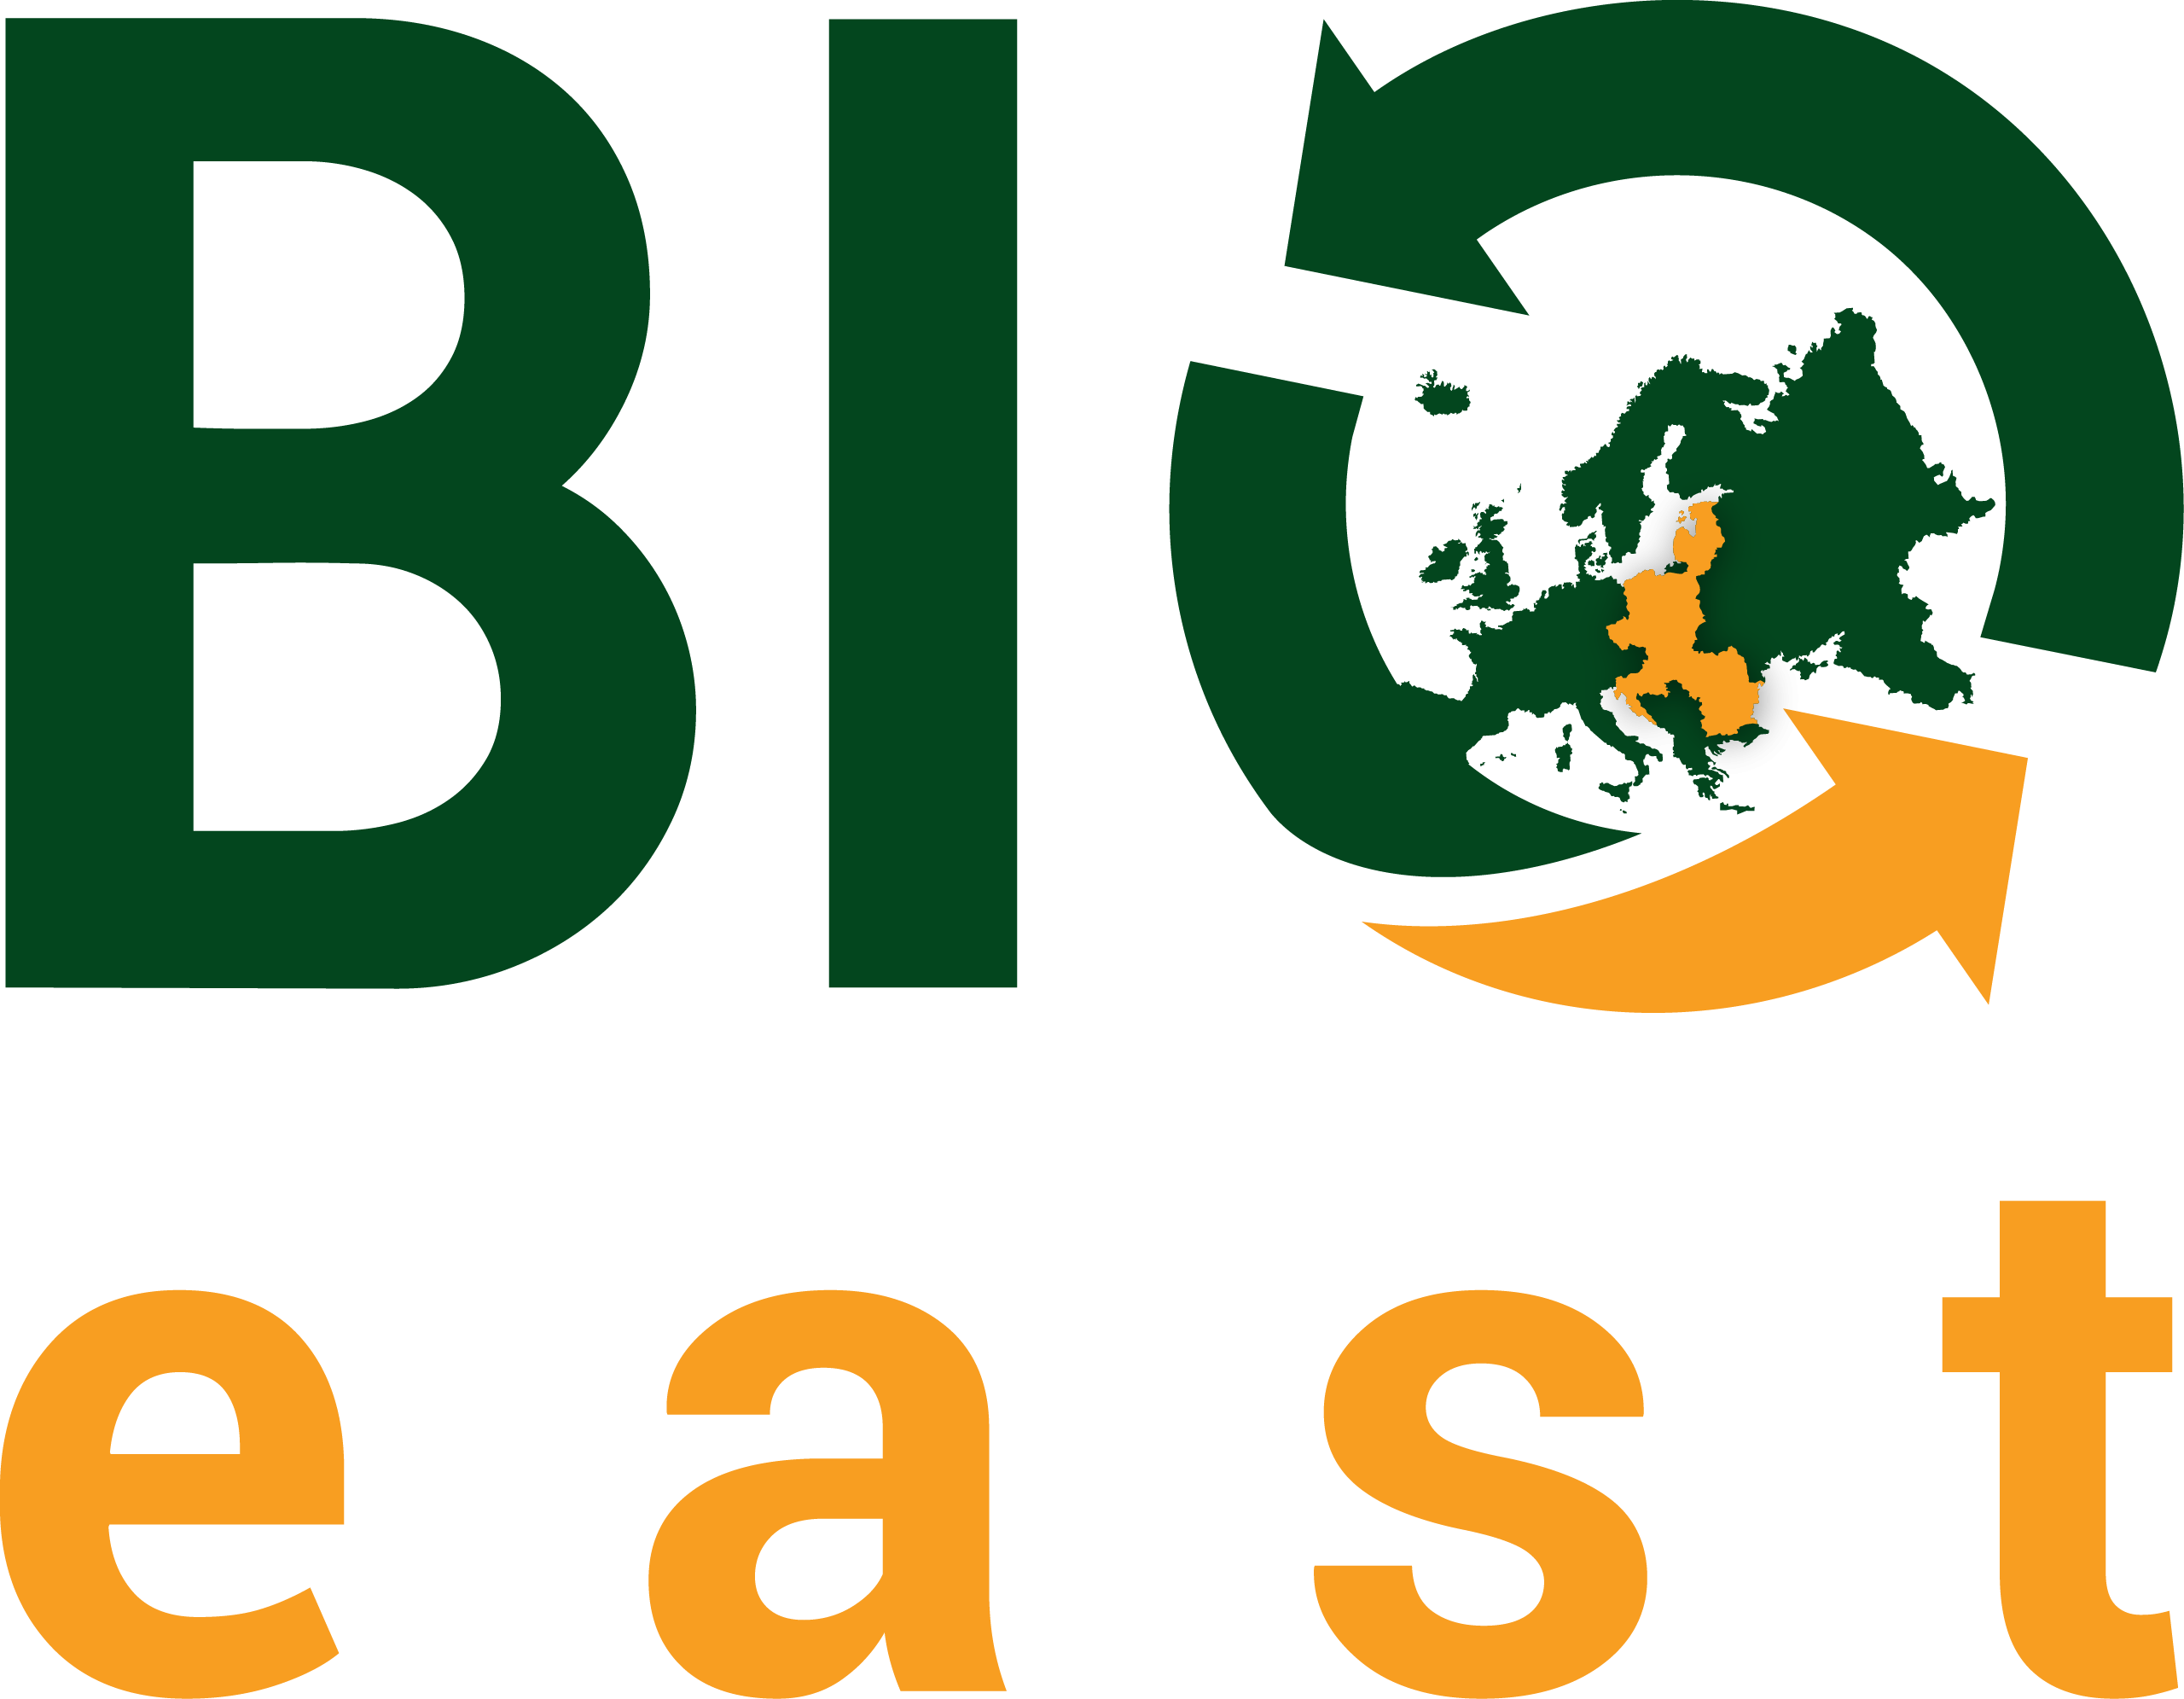 Bioeast